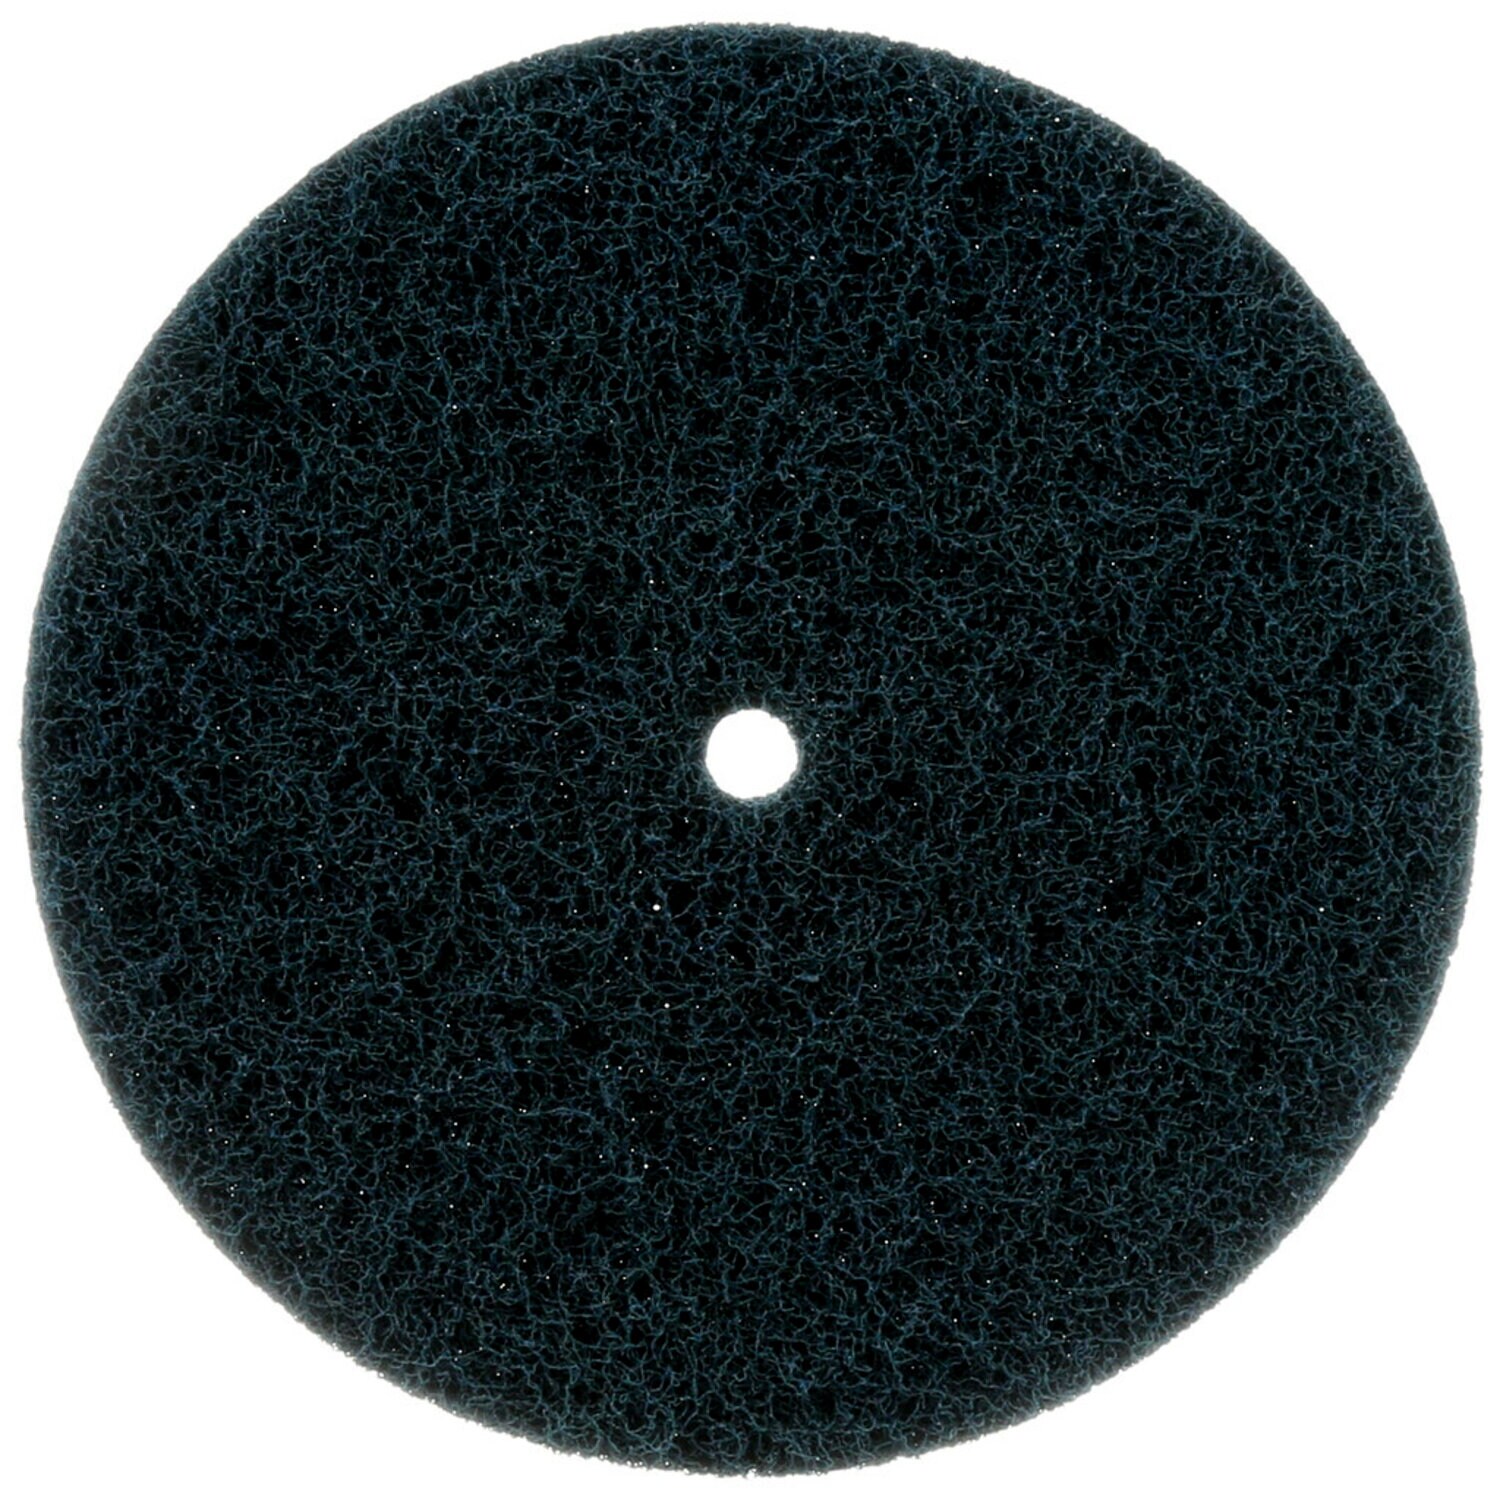 7000121831 - Standard Abrasives Buff and Blend HS Disc, 810410, 4 in x 1/2 in A MED,
10/Bag, 100 ea/Case